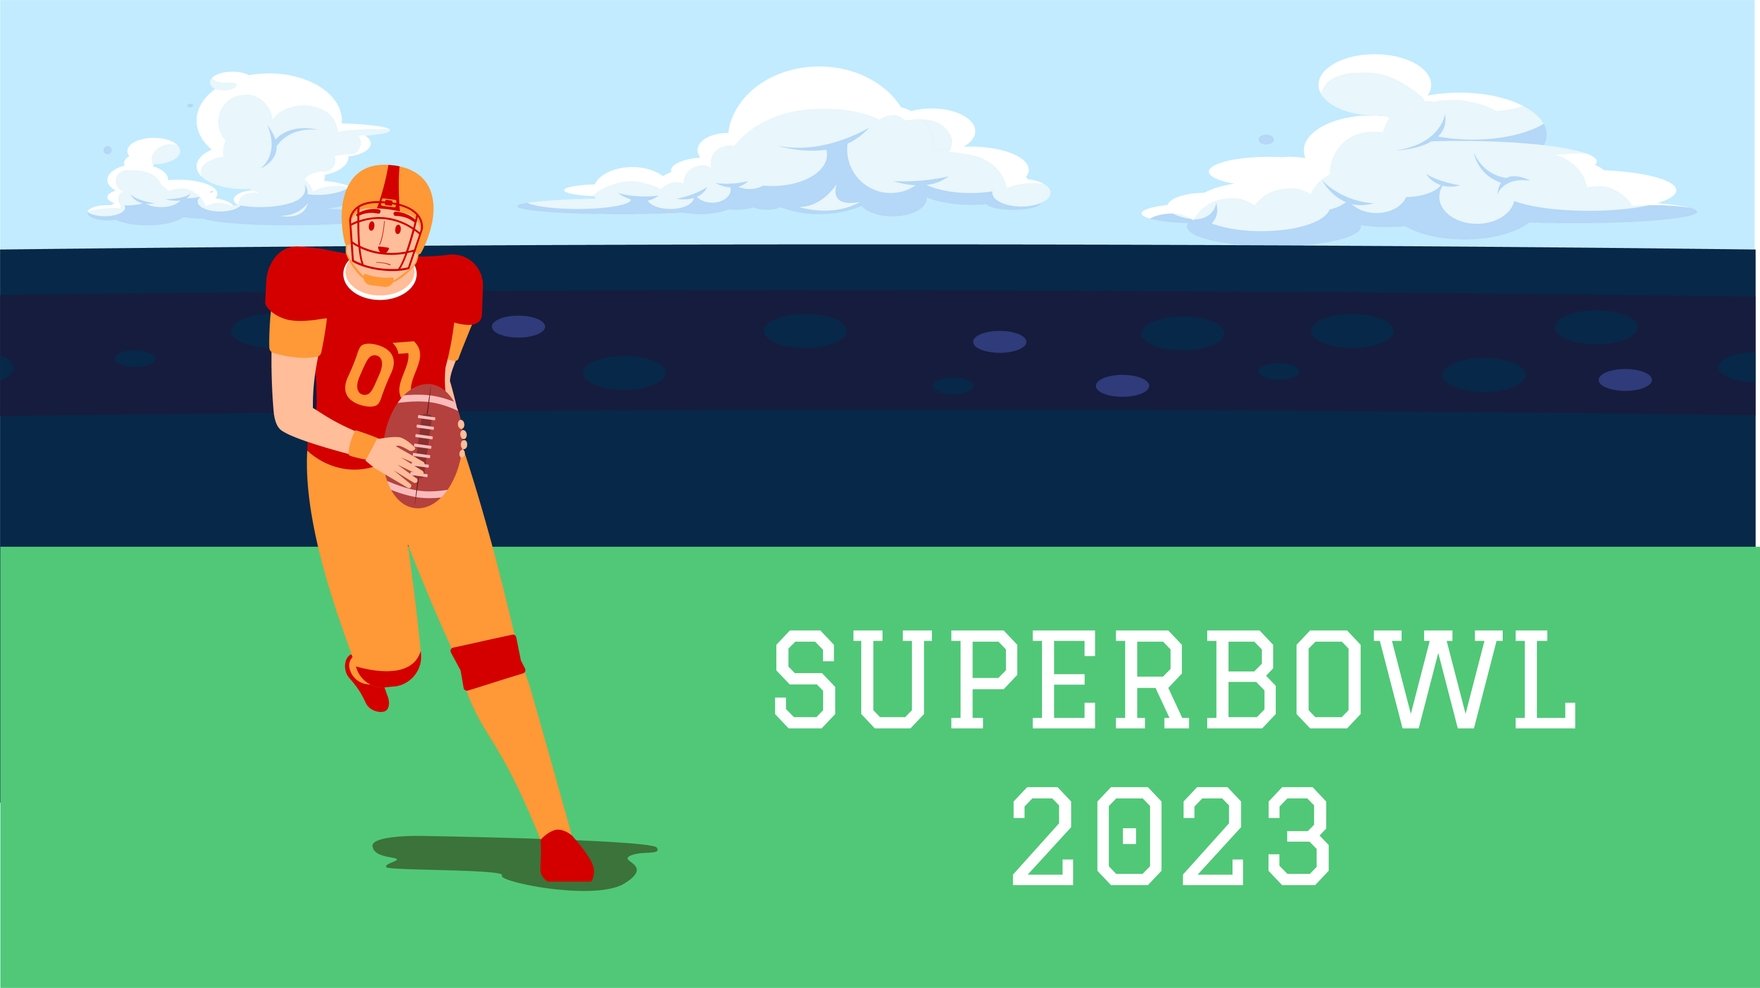 Free Super Bowl 2023 Cartoon Background in PDF, Illustrator, PSD, EPS, SVG, JPG, PNG